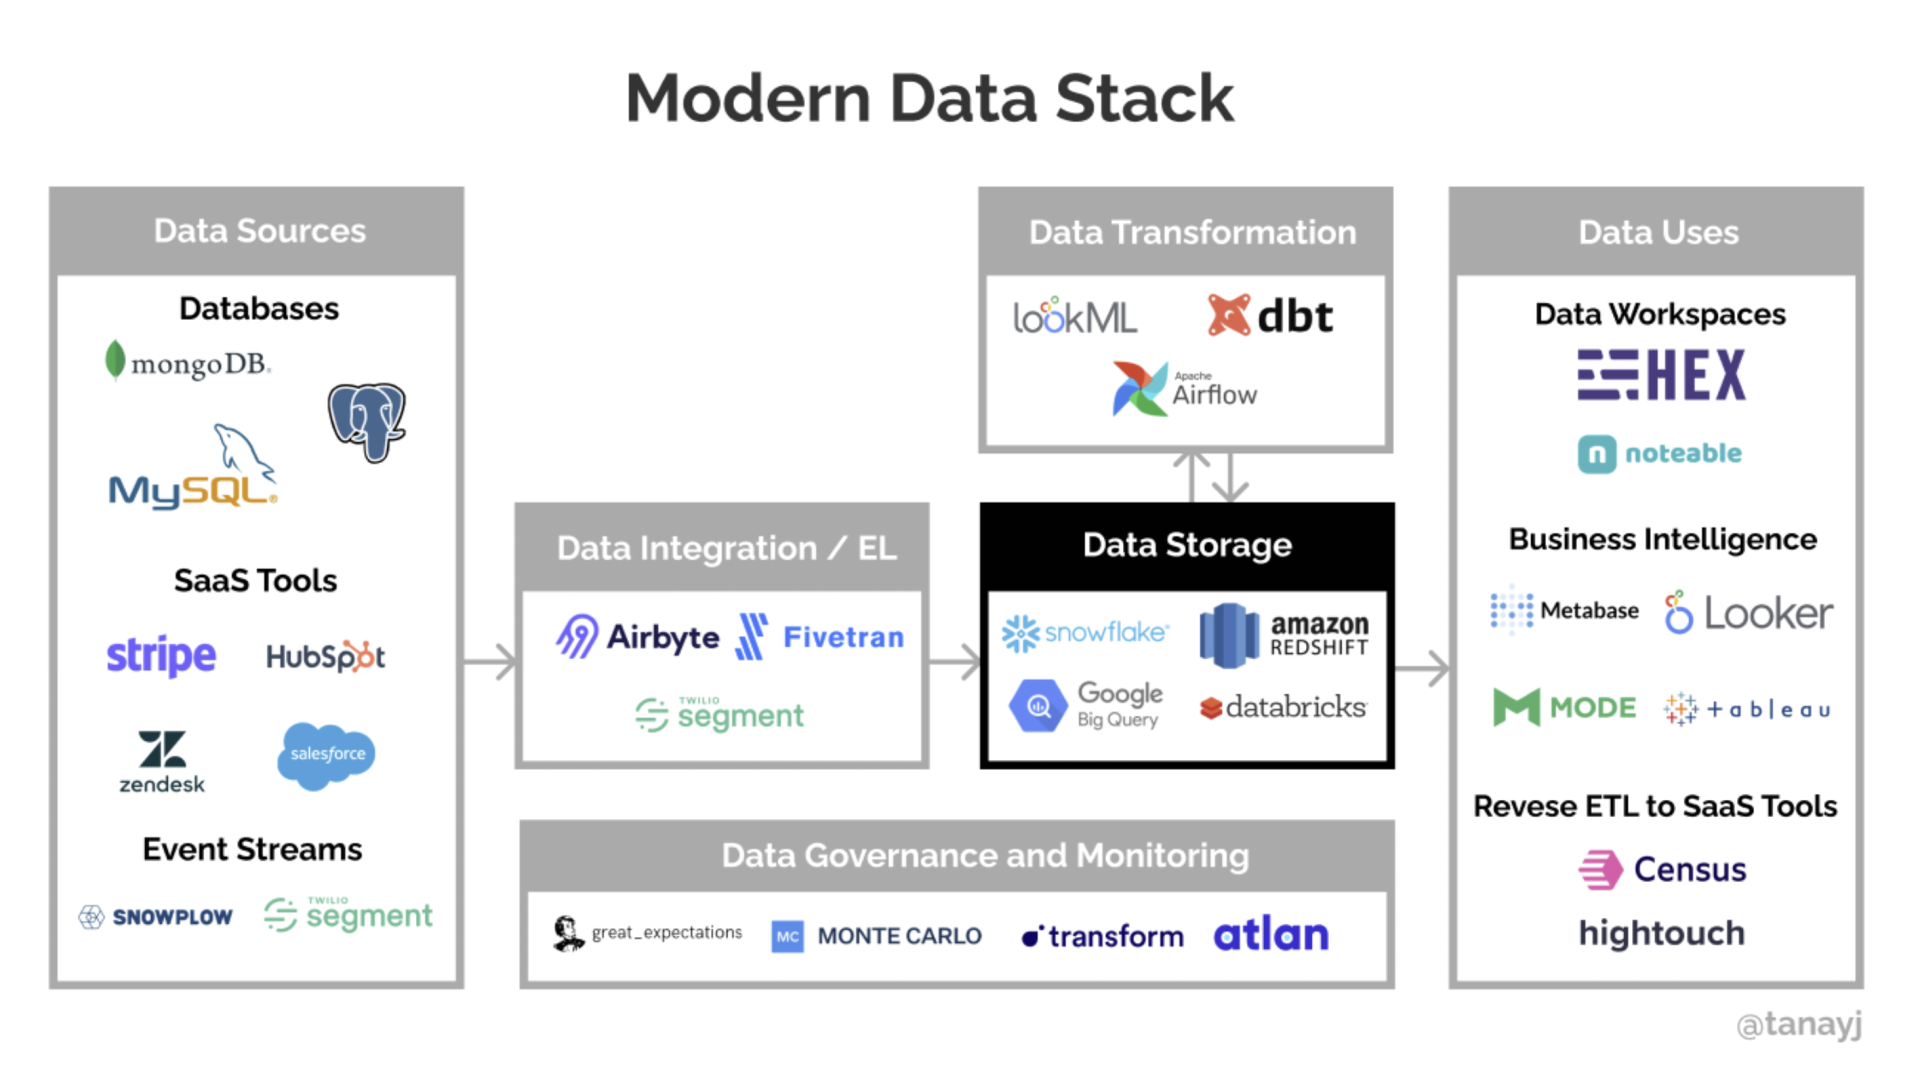 图片摘自https://tanay.substack.com/p/understanding-the-modern-data-stack